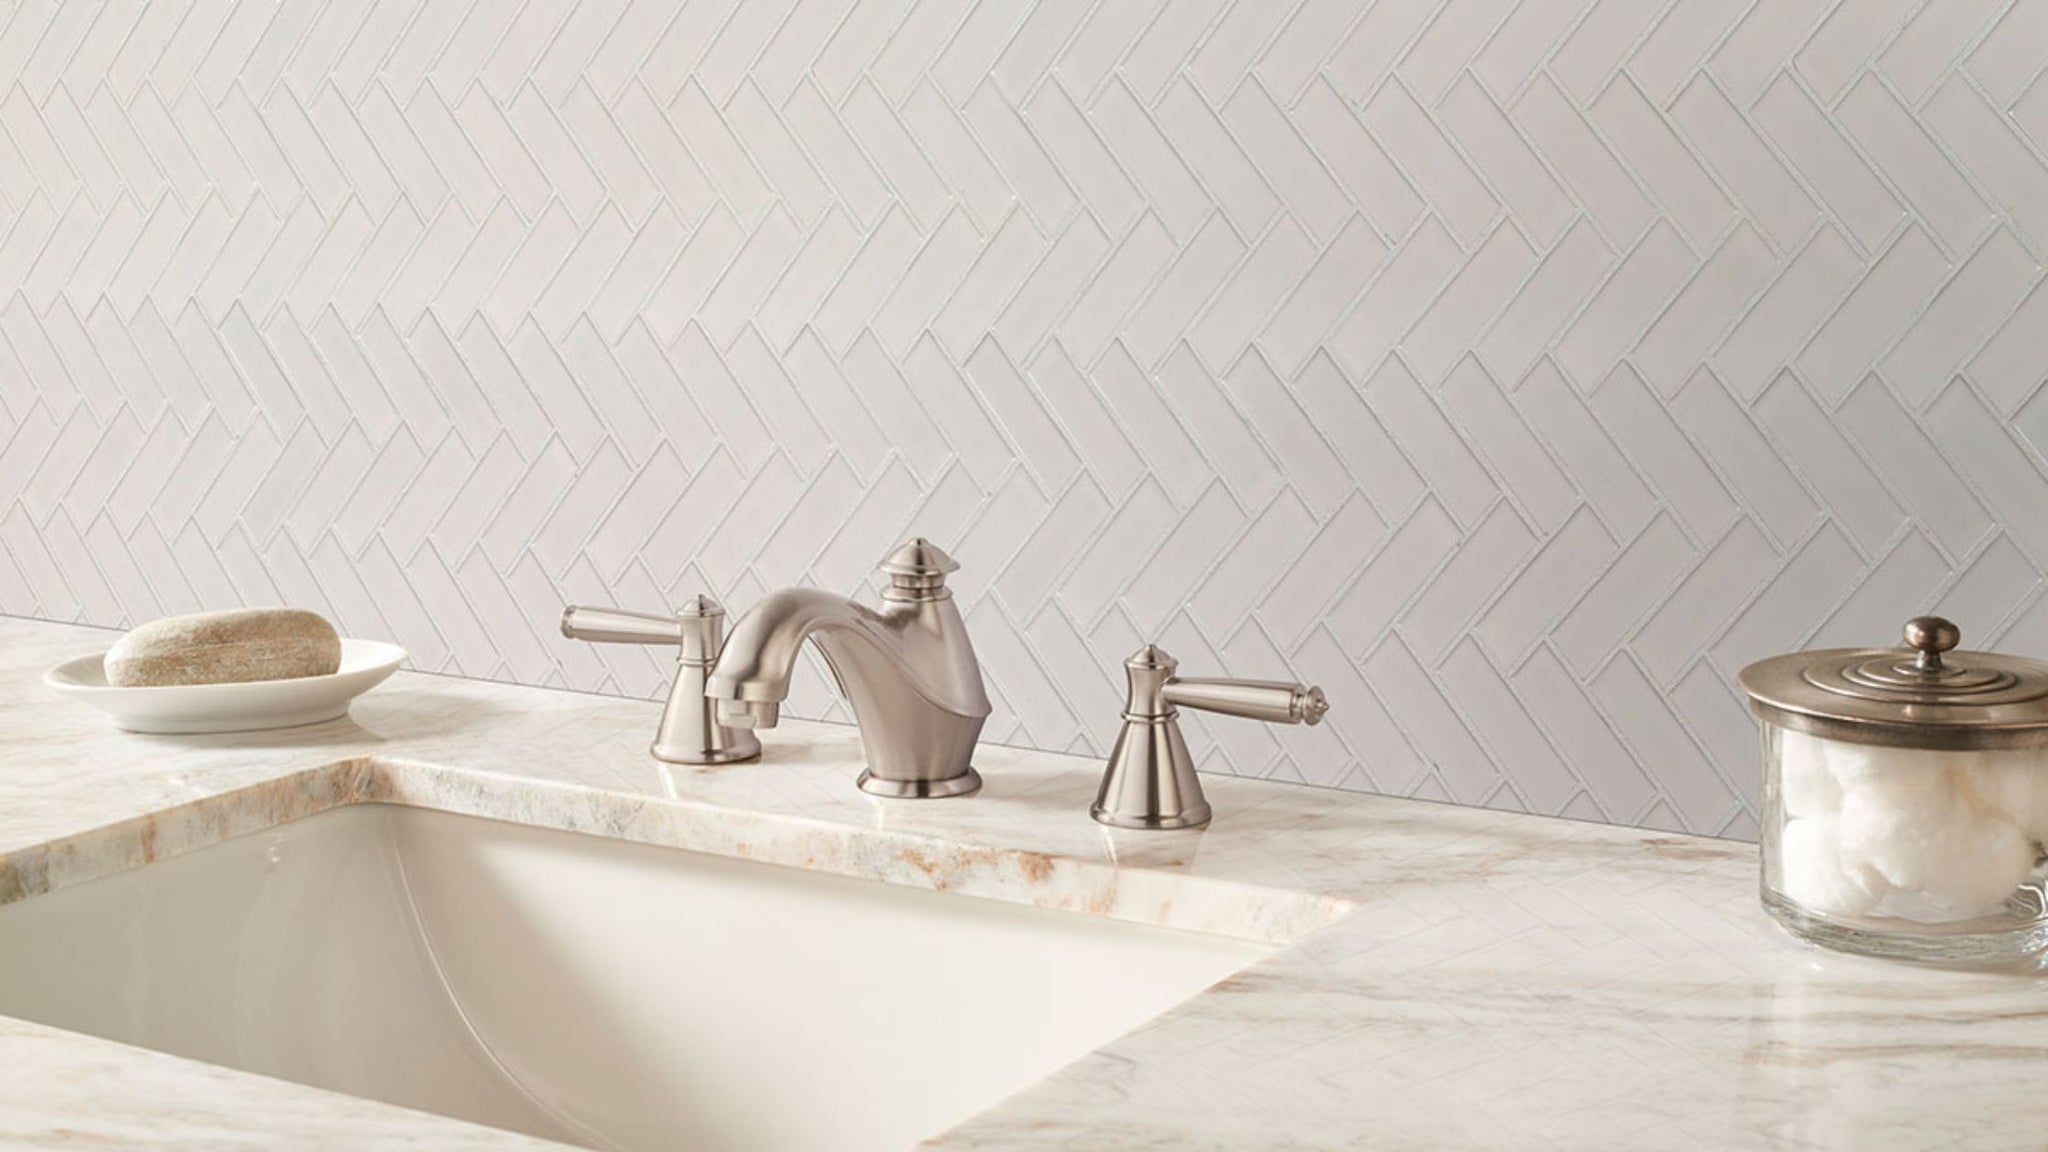 Herringbone Pattern tile in bathroom backsplash